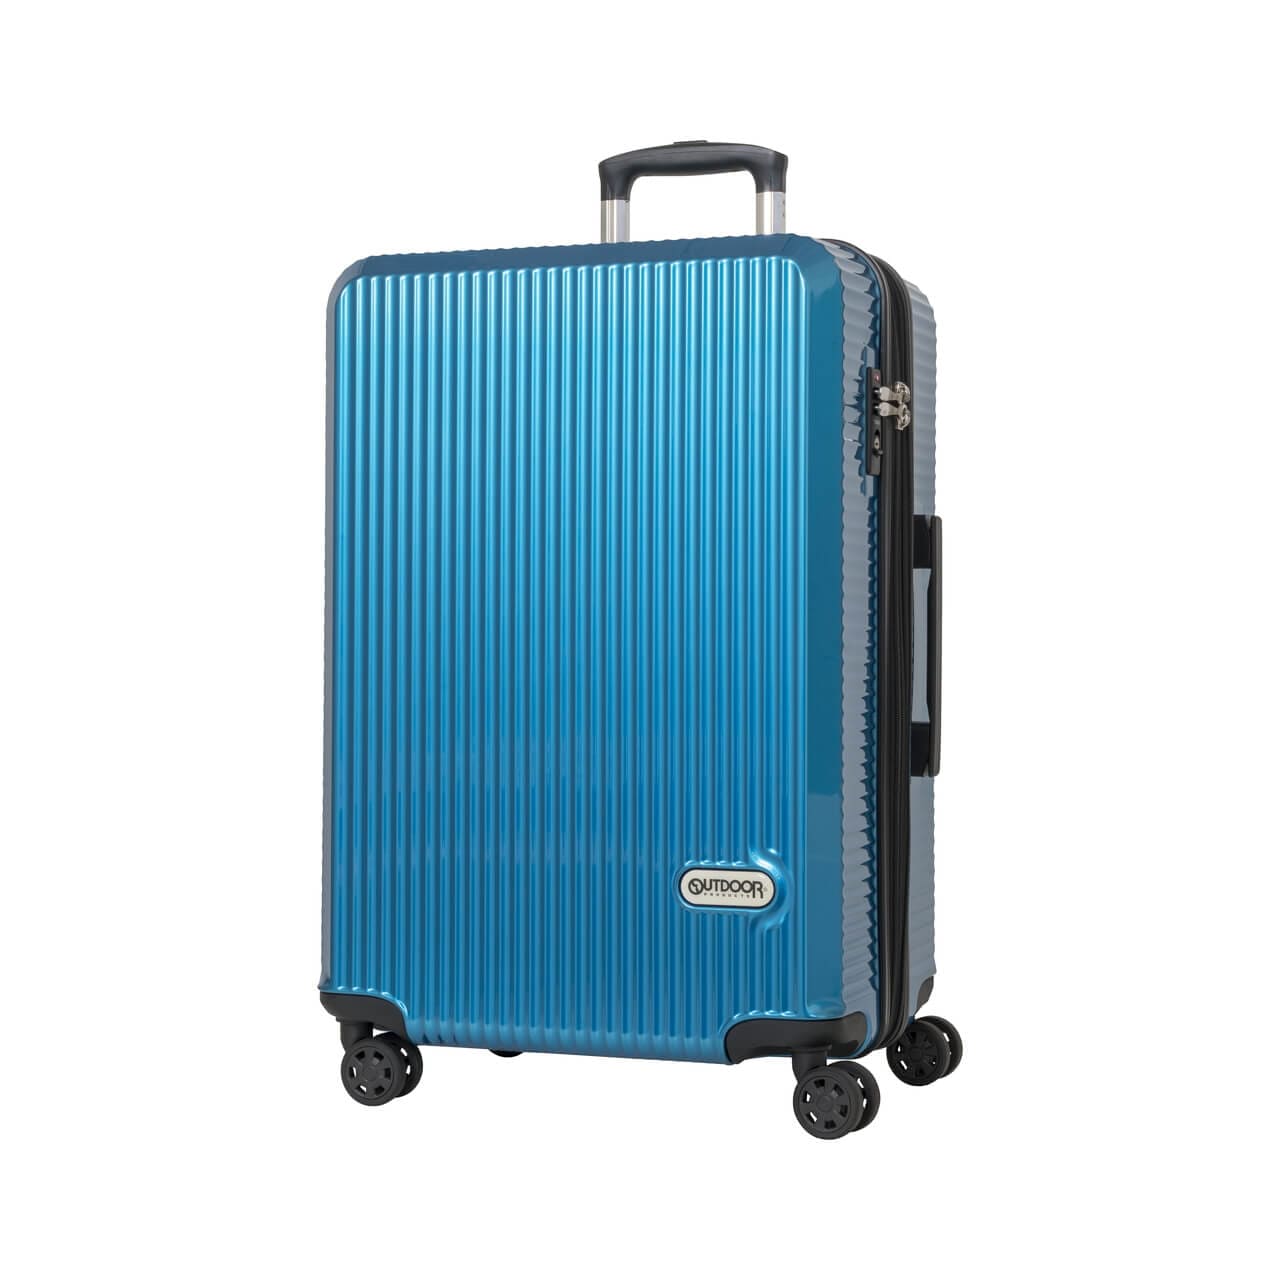 父の日 プレゼント スーツケース Mサイズ 5泊6日 キャリーケース 軽量 拡張 静音 旅行 ビジネス トラベル アウトドアプロダクツ  OD-0808-60